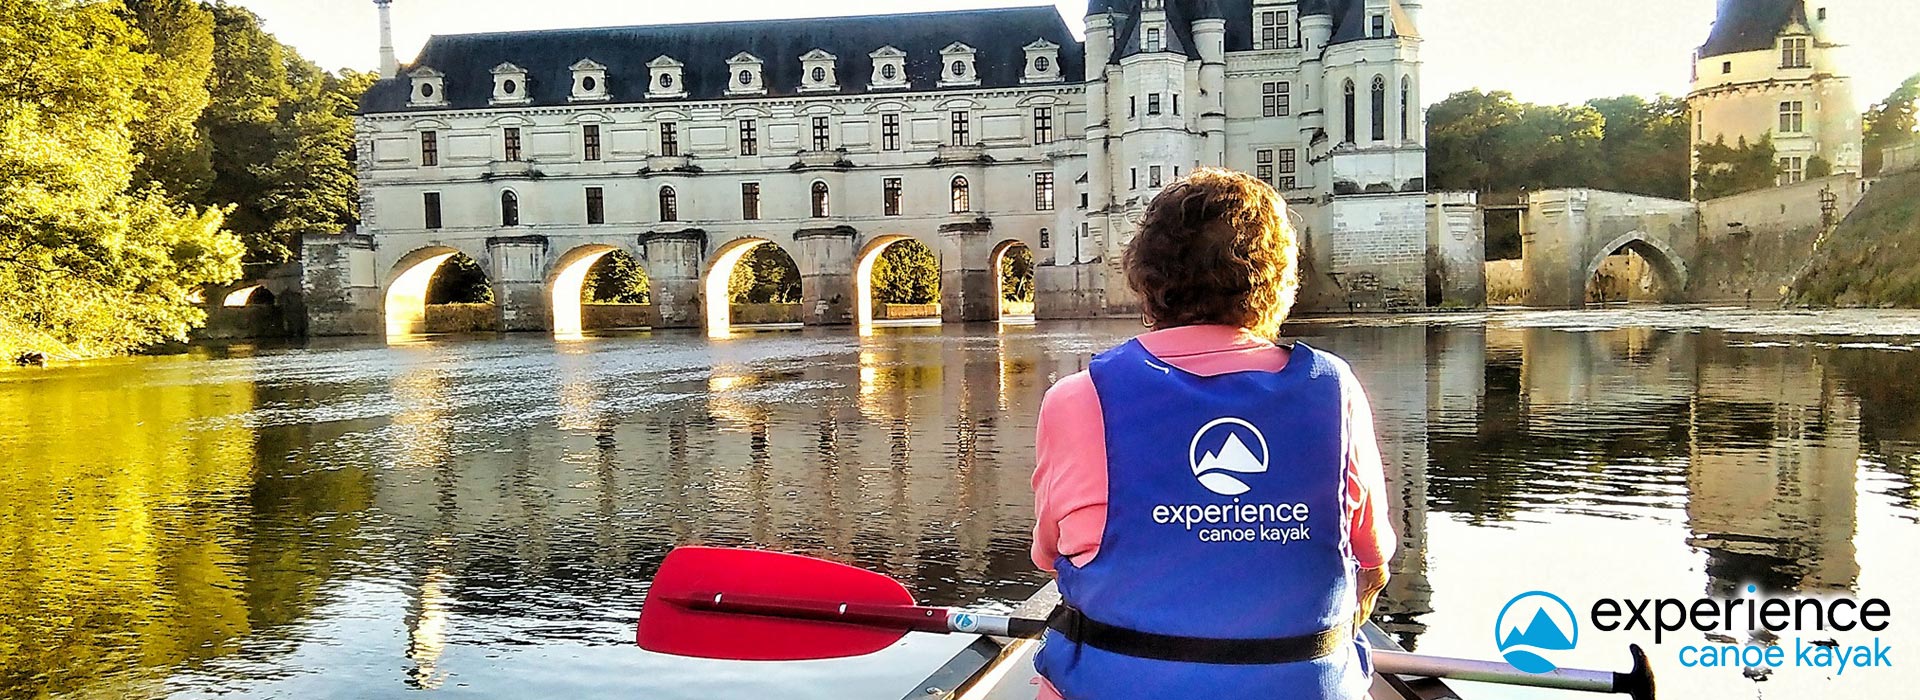 Experience Canoe Kayak